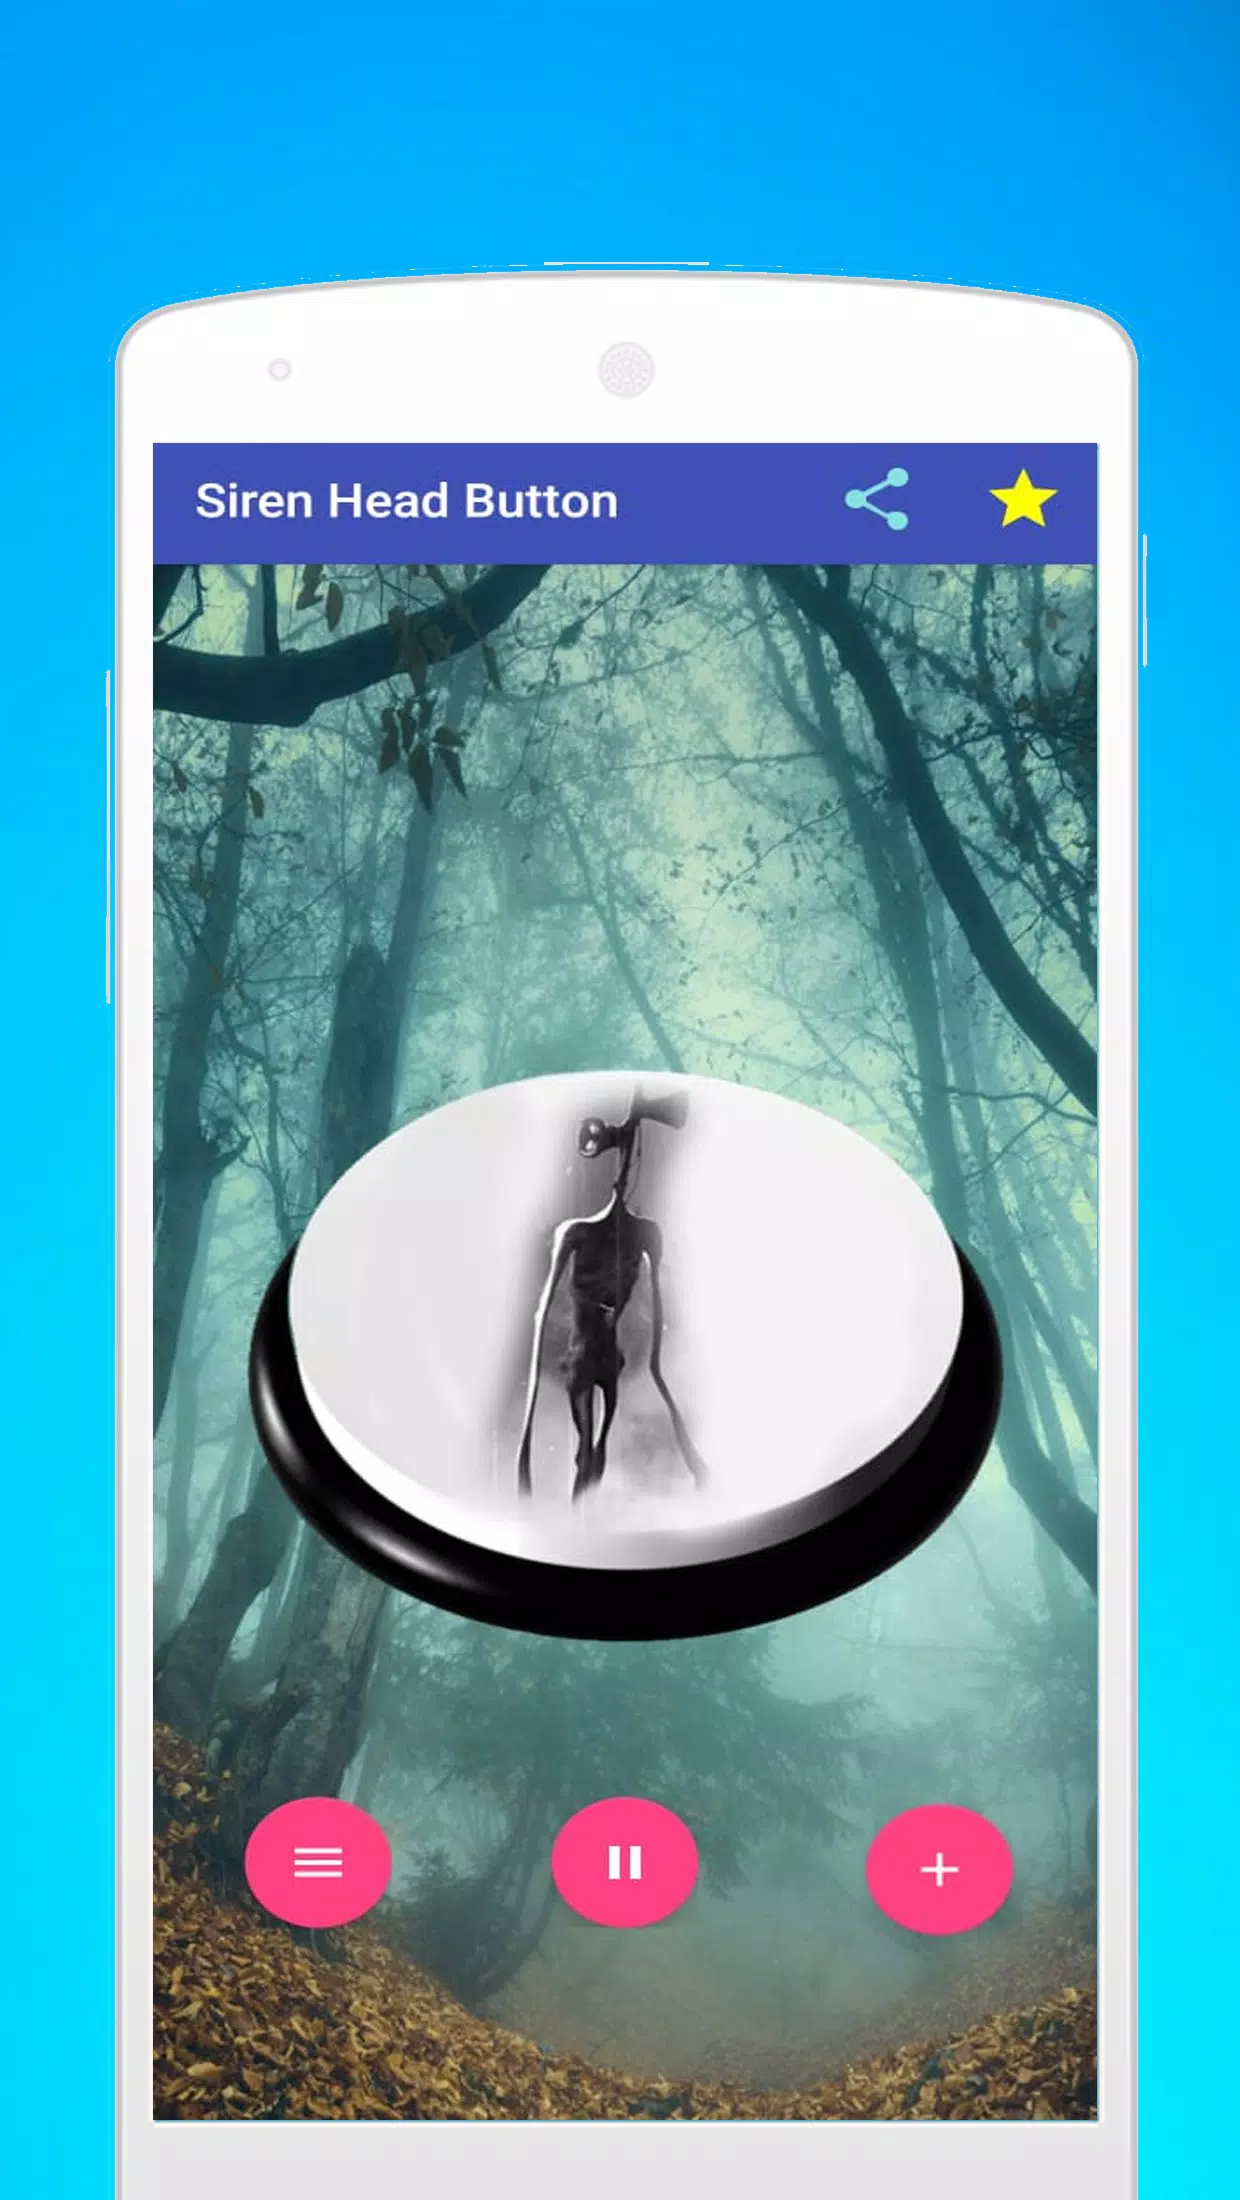 Siren Head Sound Button 1.0 Free Download